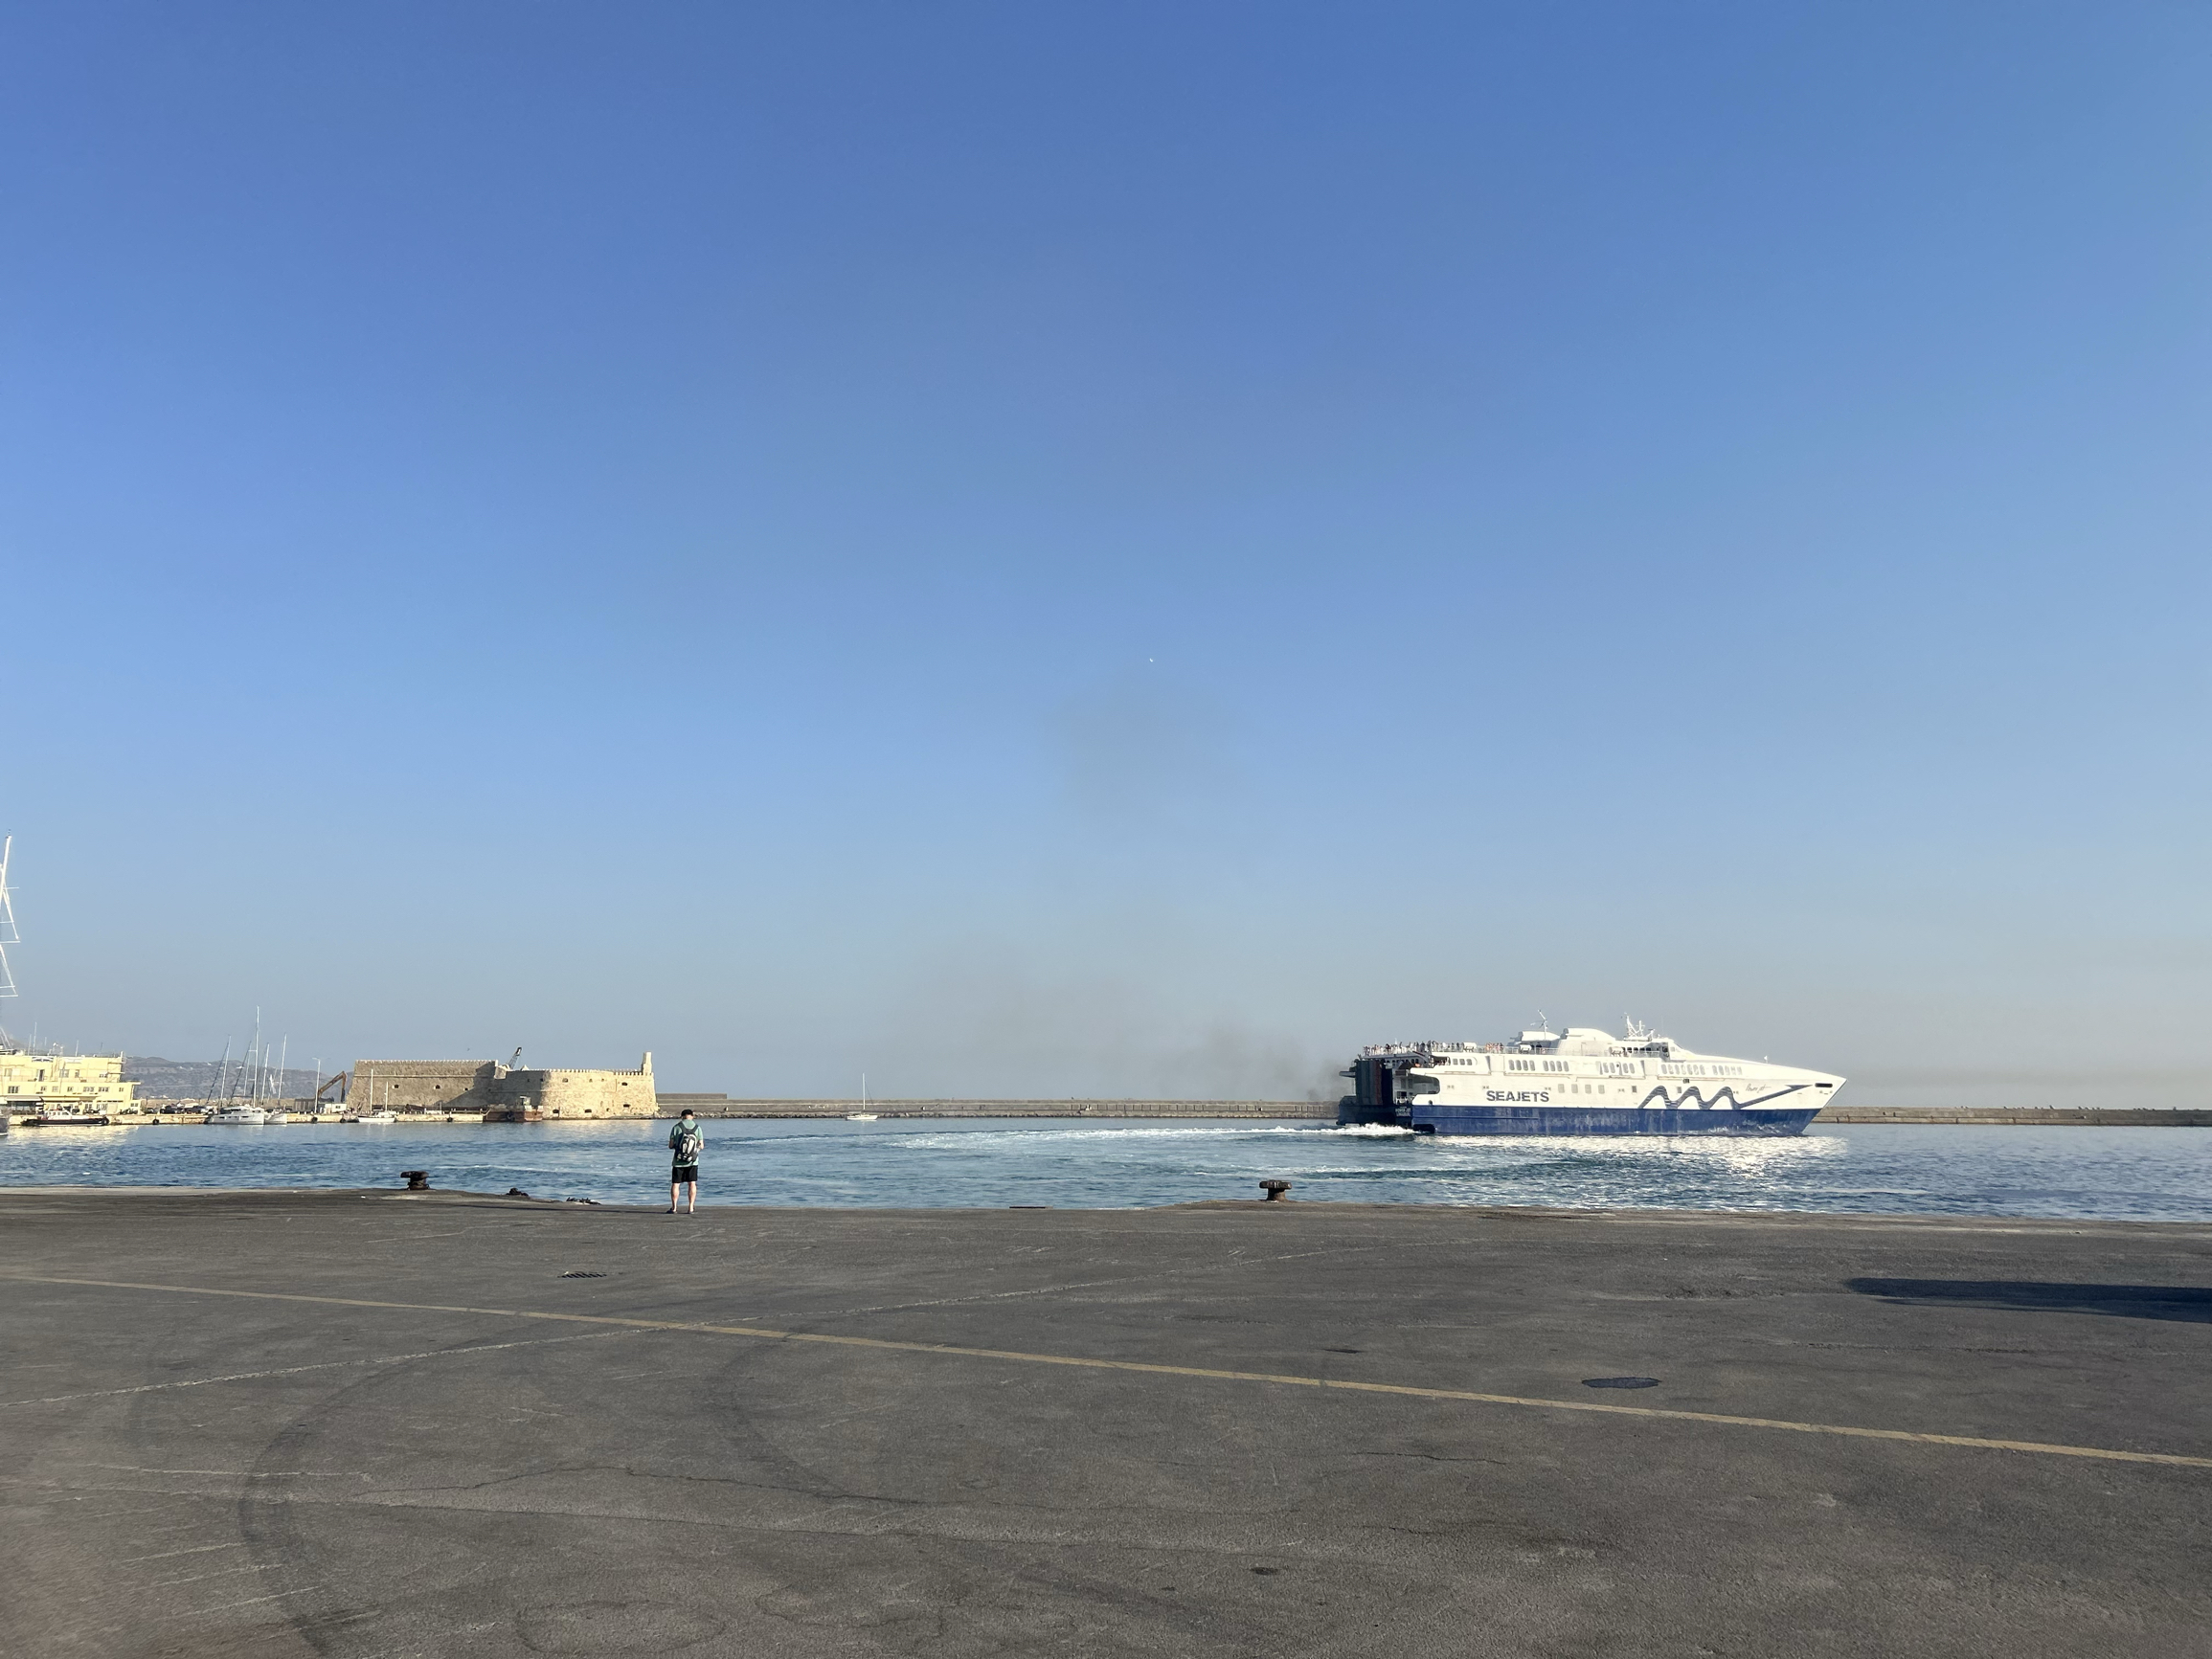 伊拉克利翁港口离机场很近。Seajets船体很大，在海中行进很稳，不用有晕船的担心。侯船不用来太早，